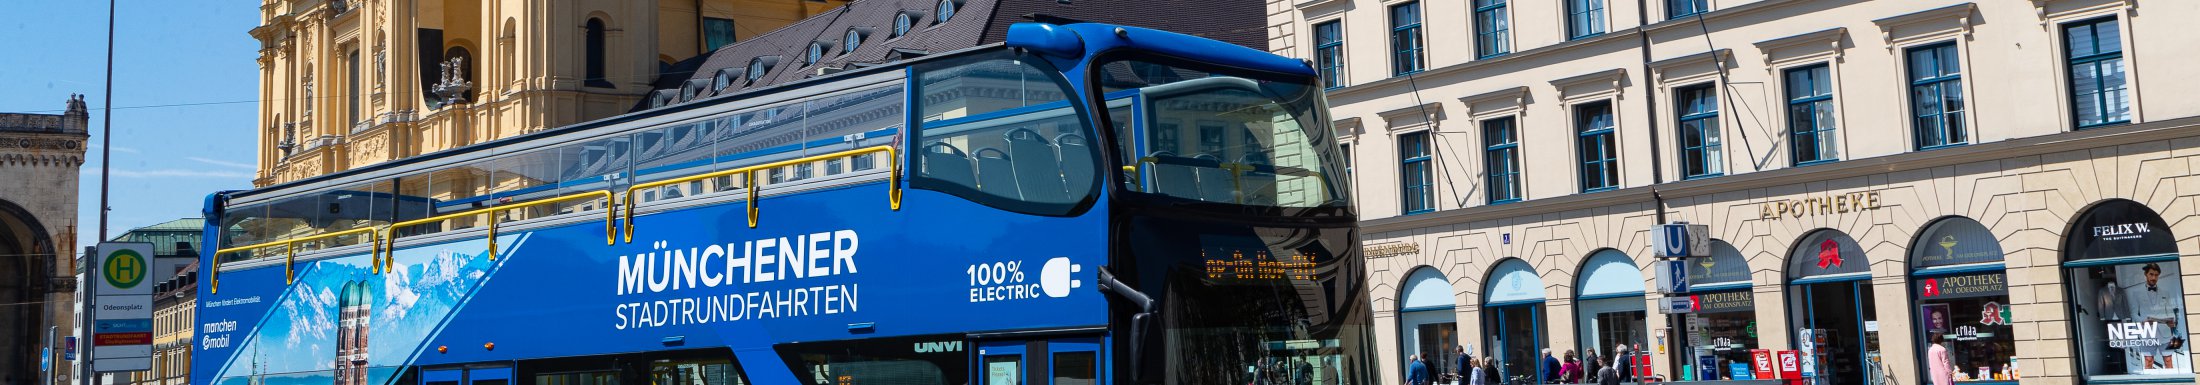 Münchener Stadtrundfahrten Bus blau Halt am Odeonsplatz vor Theatinerkirche